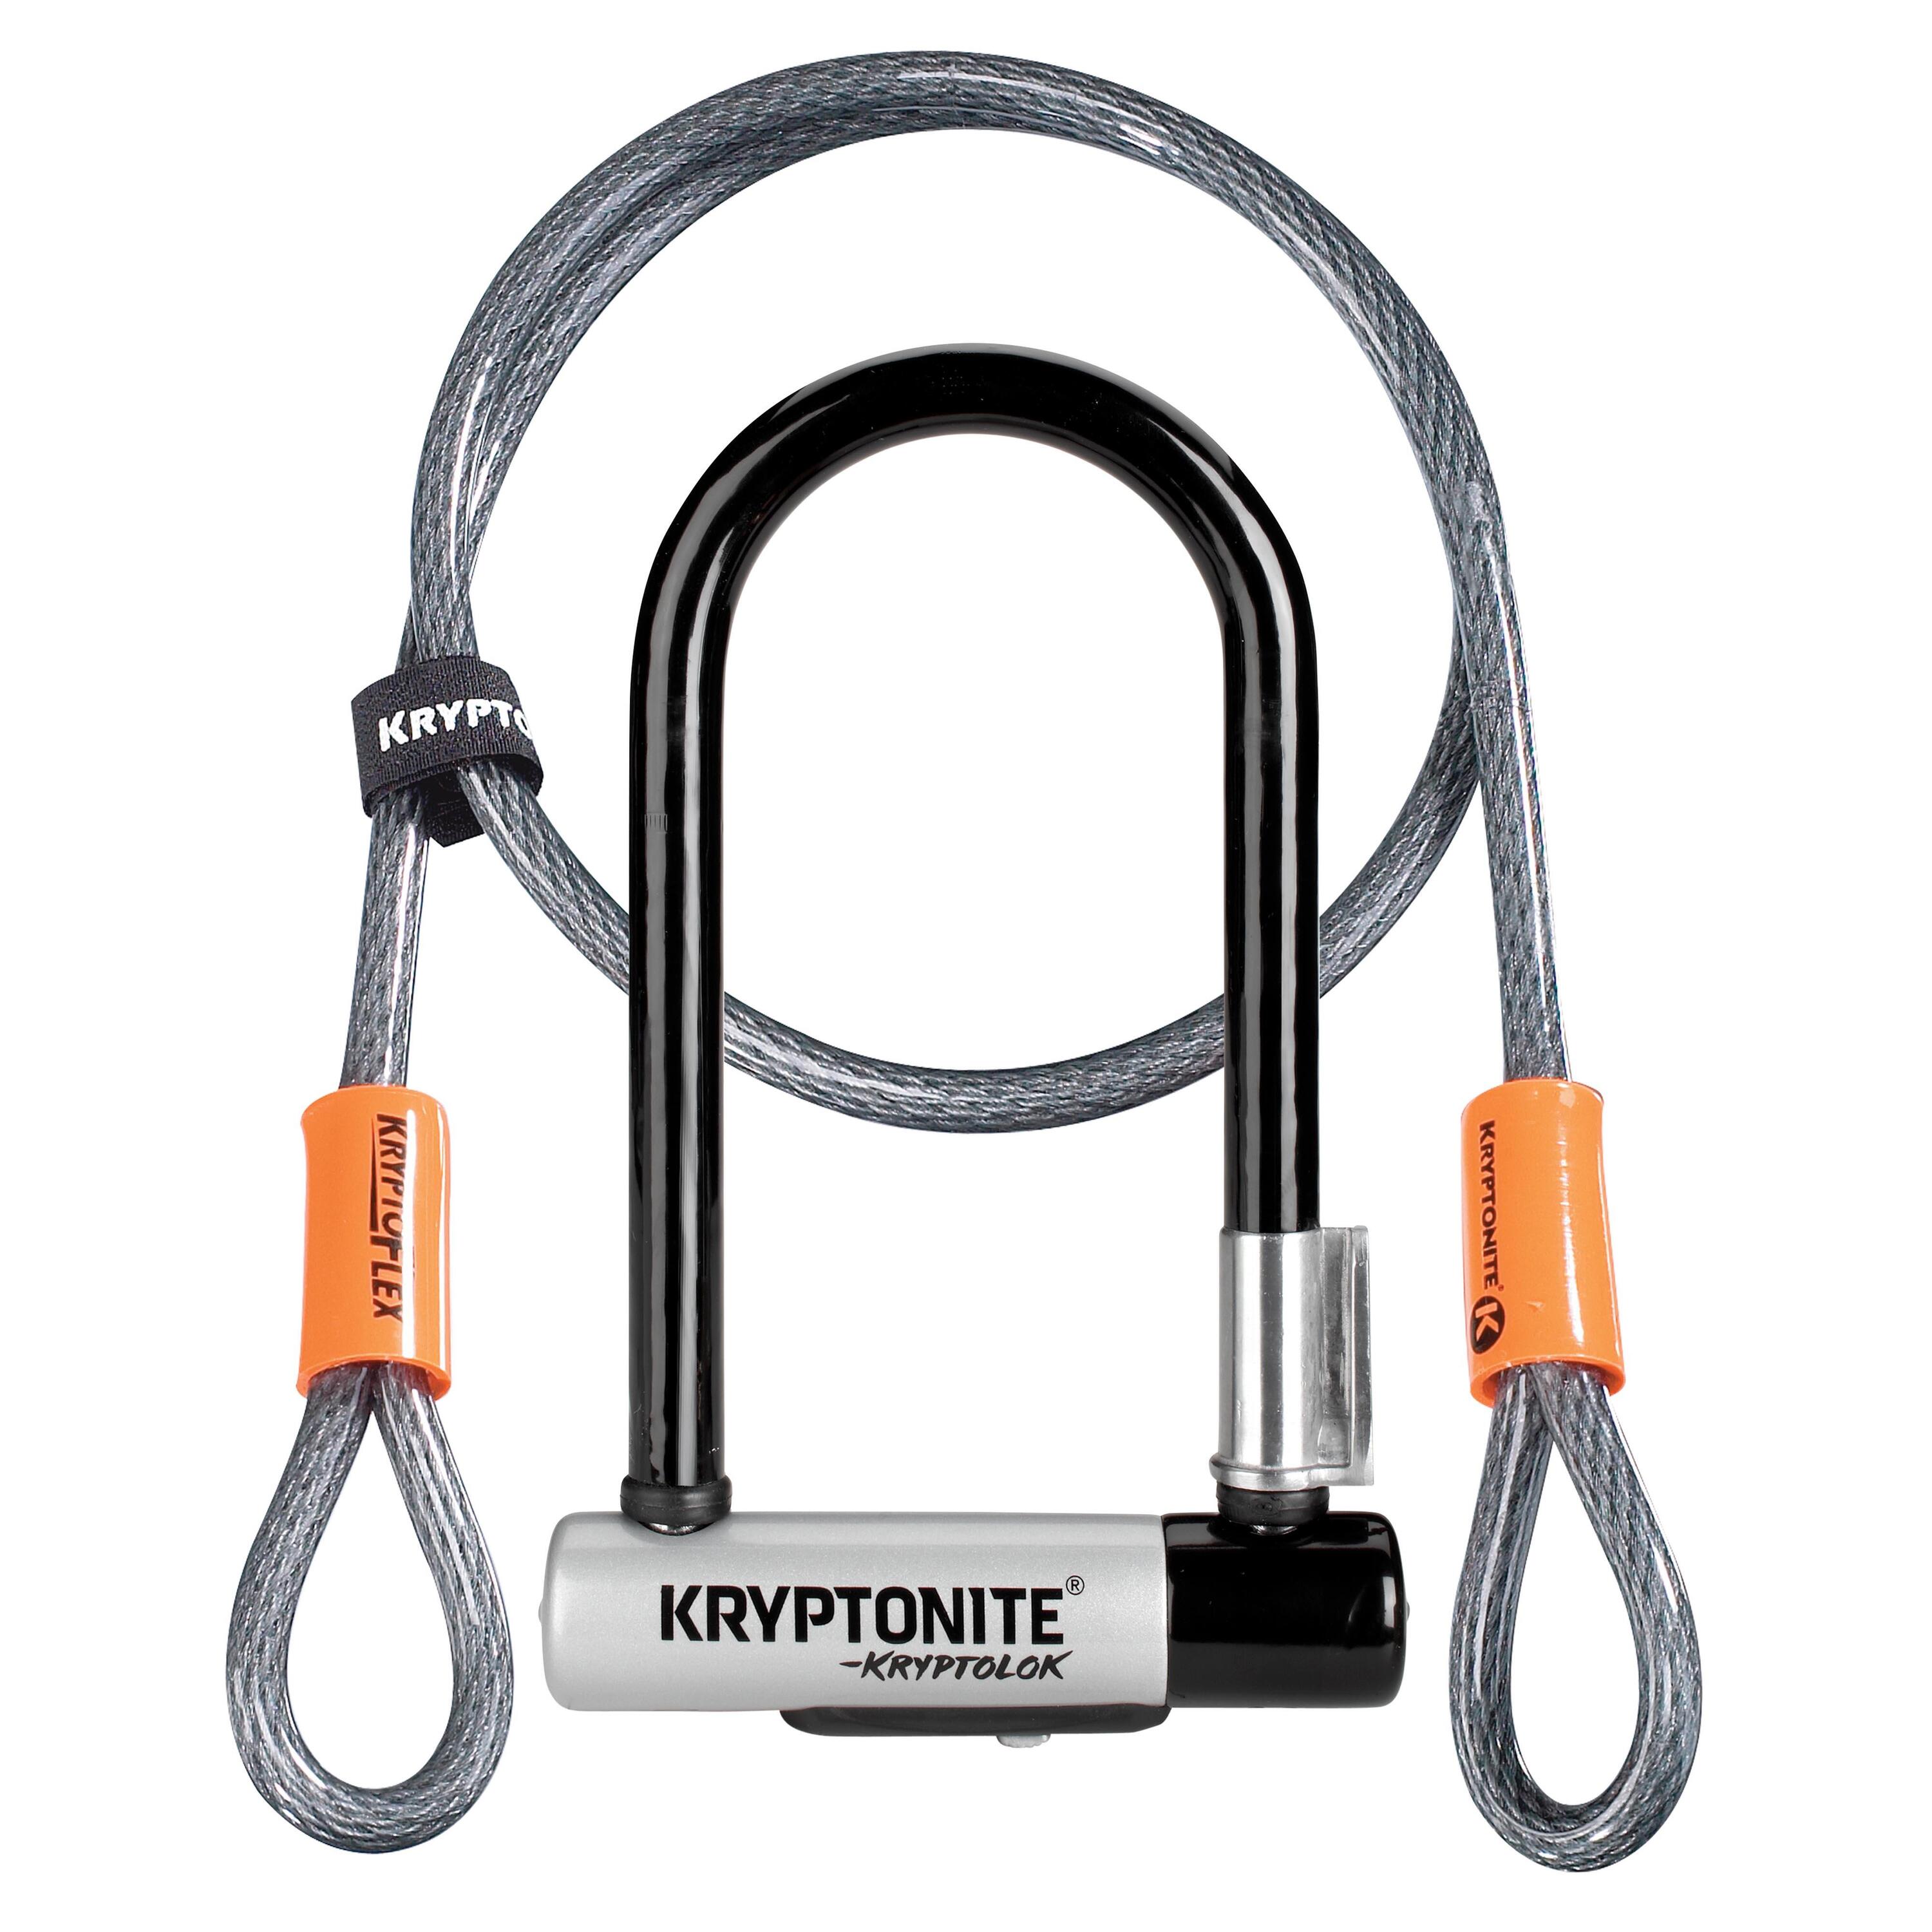 KRYPTONITE Kryptonite KryptoLok D Lock with 4 foot Krytoflex cable - Sold Secure Gold